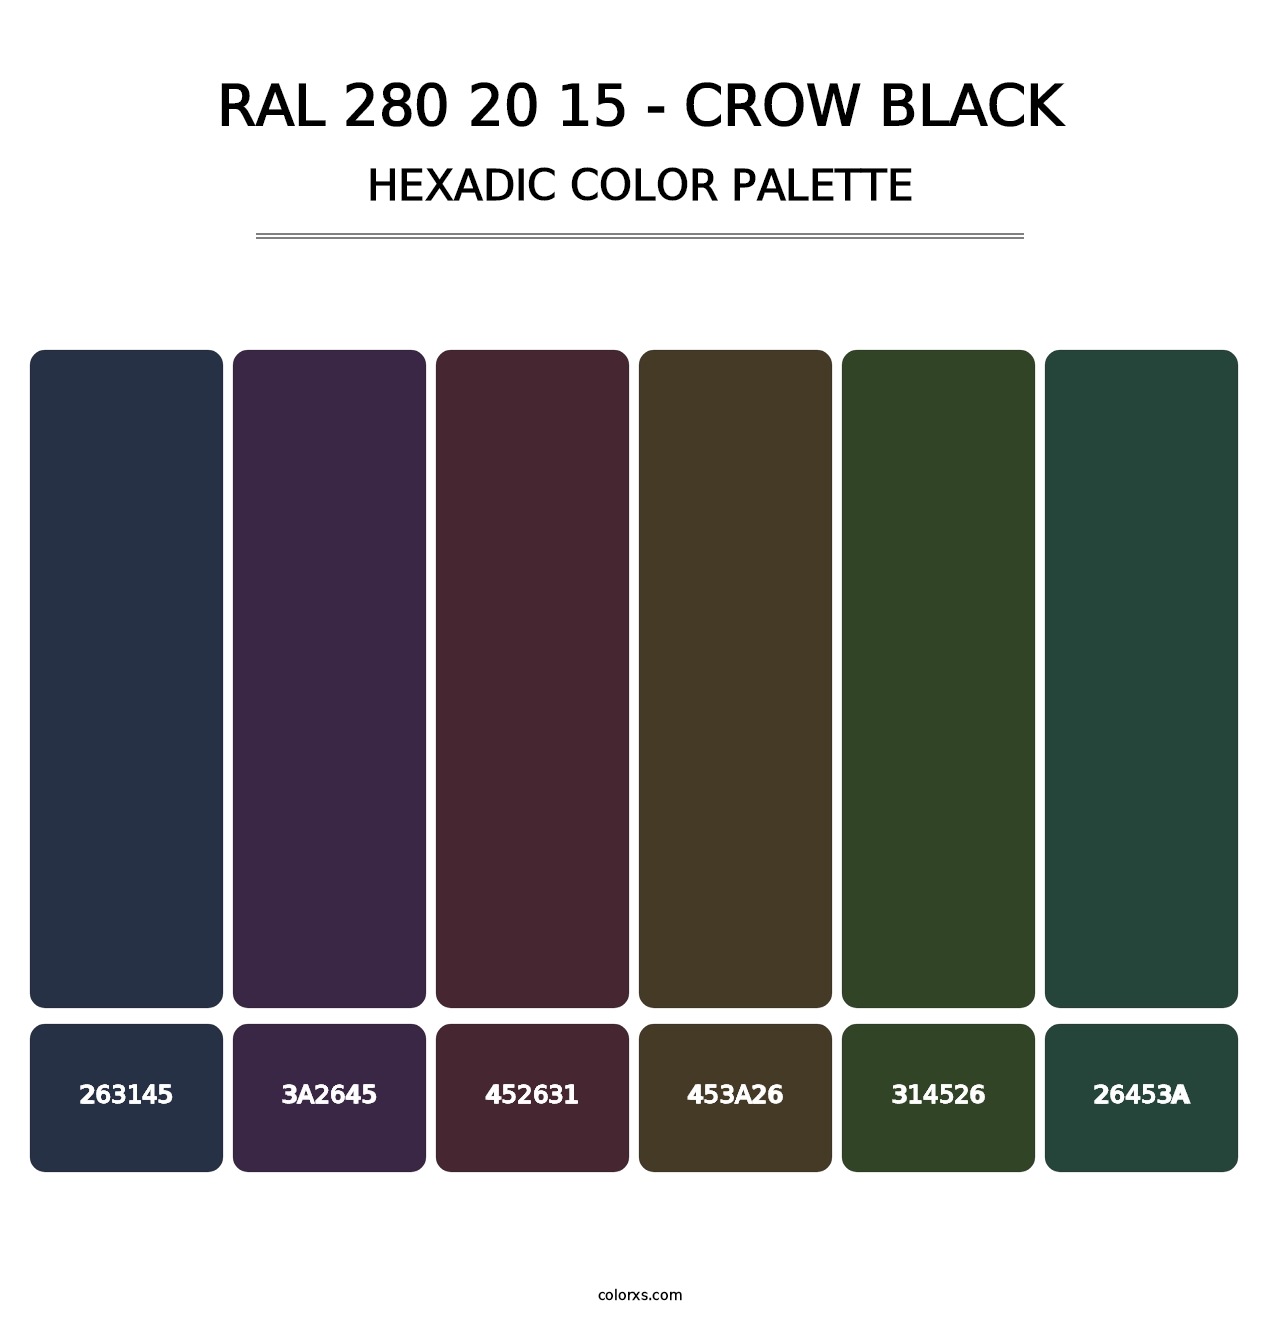 RAL 280 20 15 - Crow Black - Hexadic Color Palette